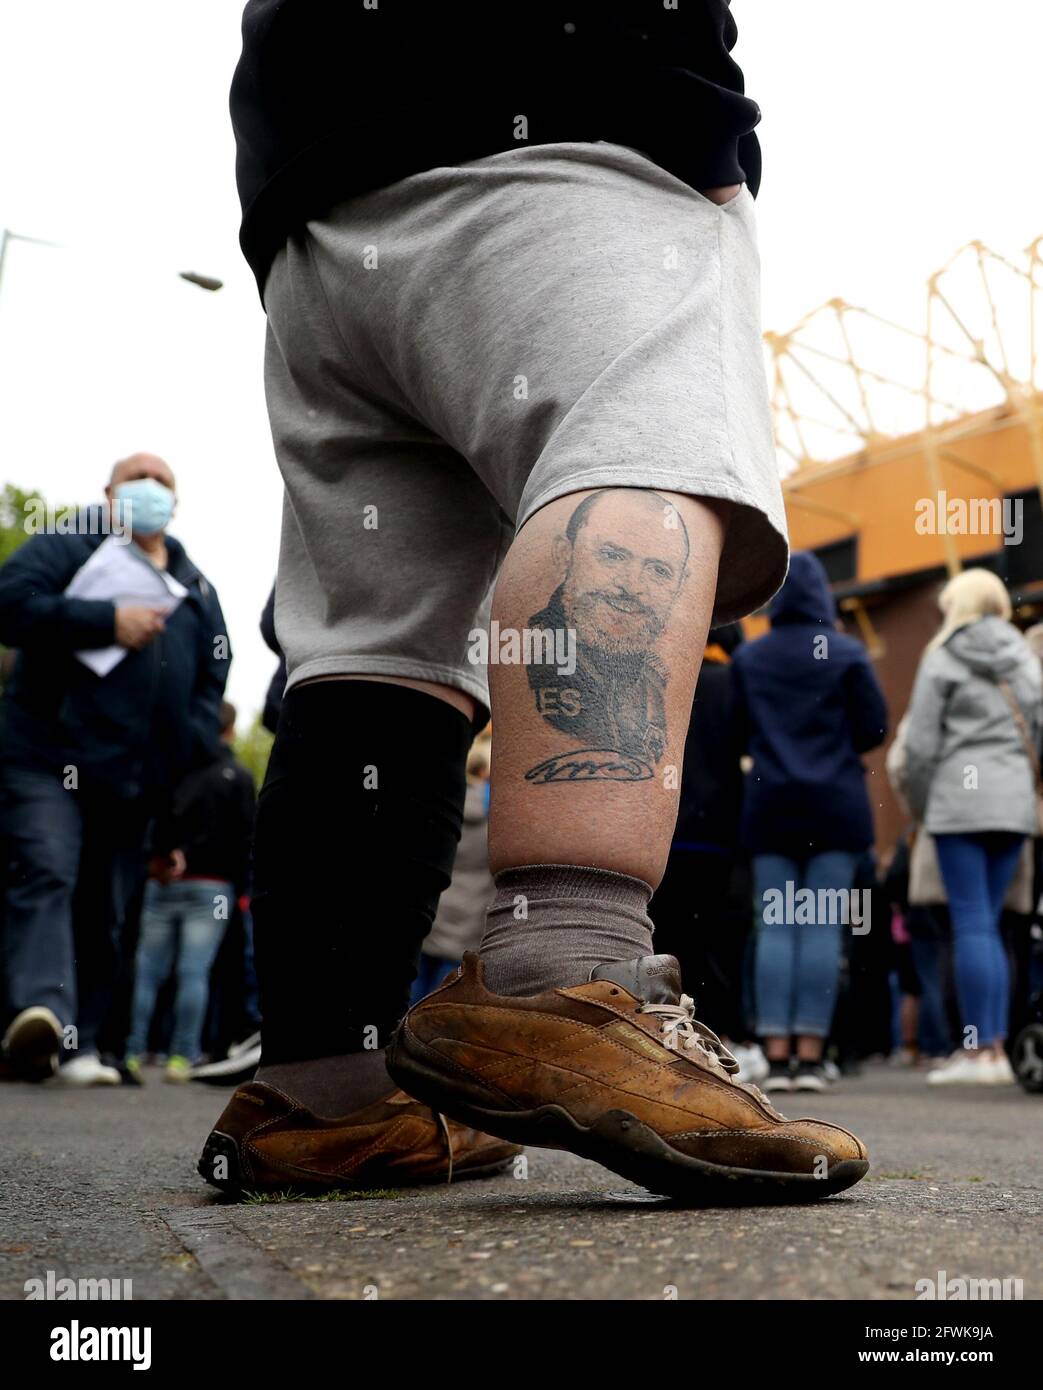 Un fan avec un tatouage du Manager de Wolverhampton Wanderers Nuno Espirito Santo sur sa jambe, à l'extérieur du stade avant le match de la Premier League au stade Molineux, Wolverhampton. Date de la photo: Dimanche 23 mai 2021. Banque D'Images